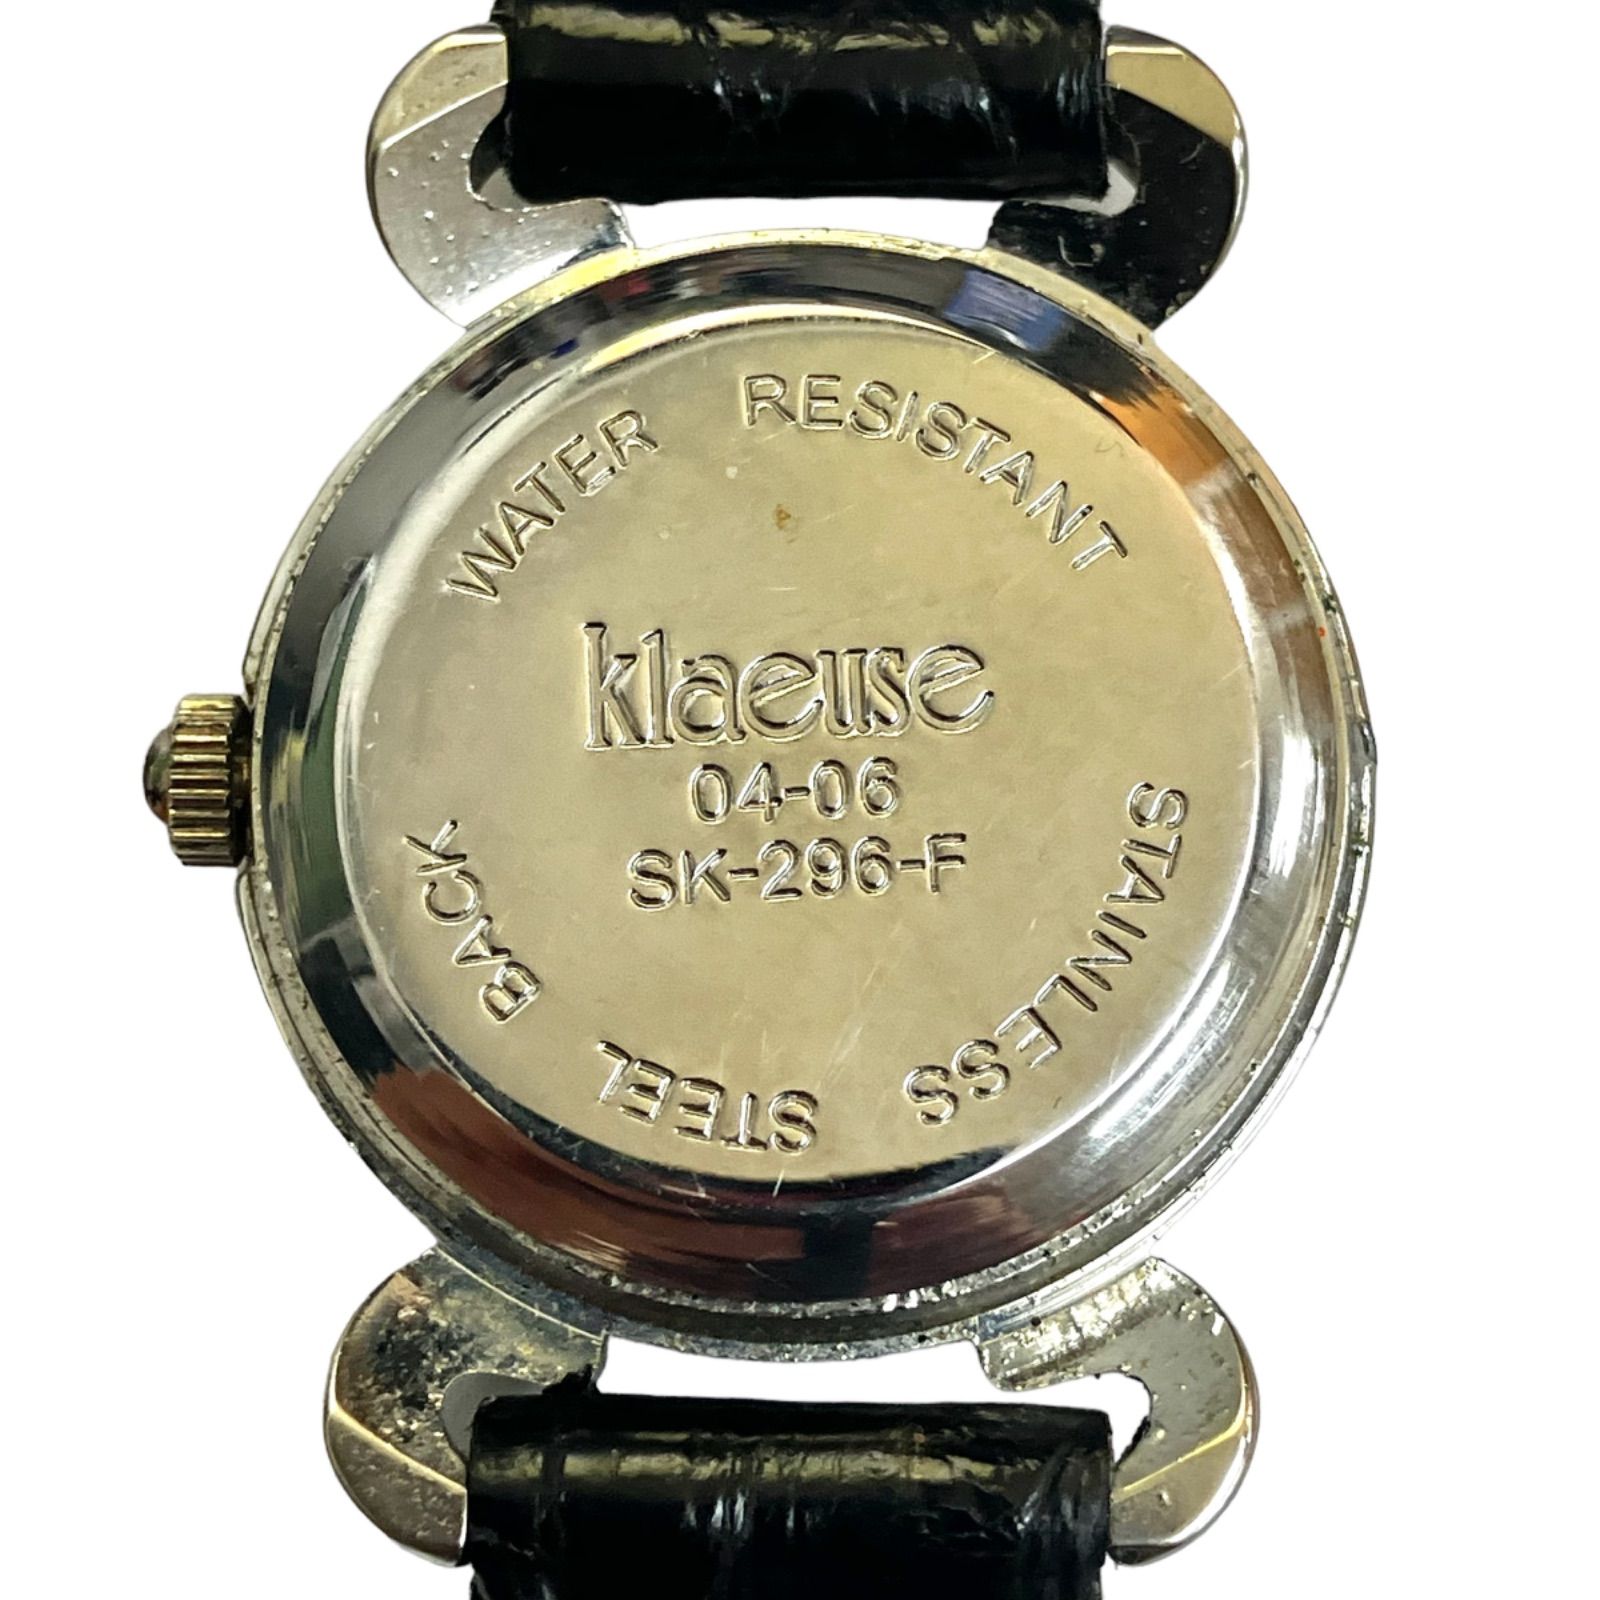 【かわいい klaeuse クロイゼ】 クオーツ腕時計 レディース Natural DIAMOND SK-296-F(AYA)